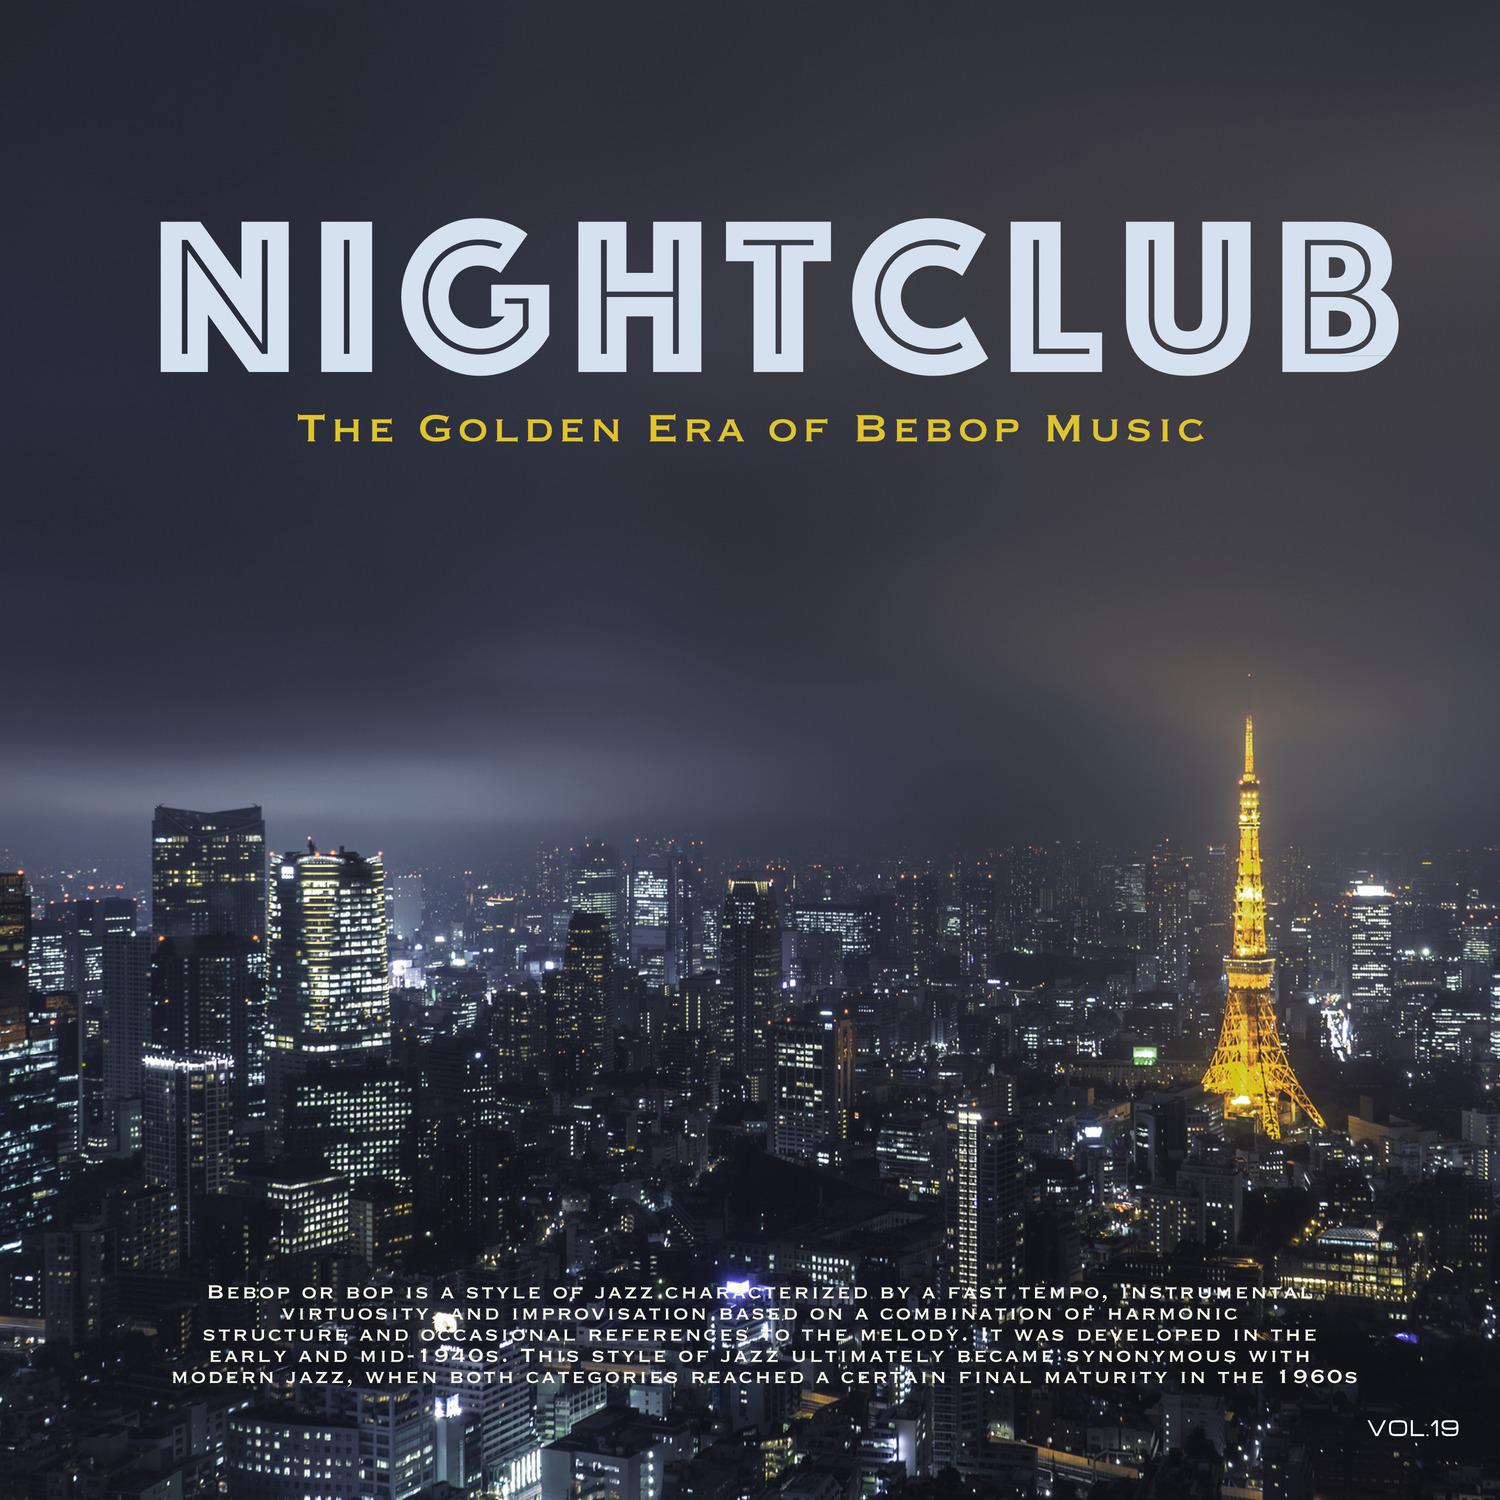 Nightclub, Vol. 19 (The Golden Era of Bebop Music)